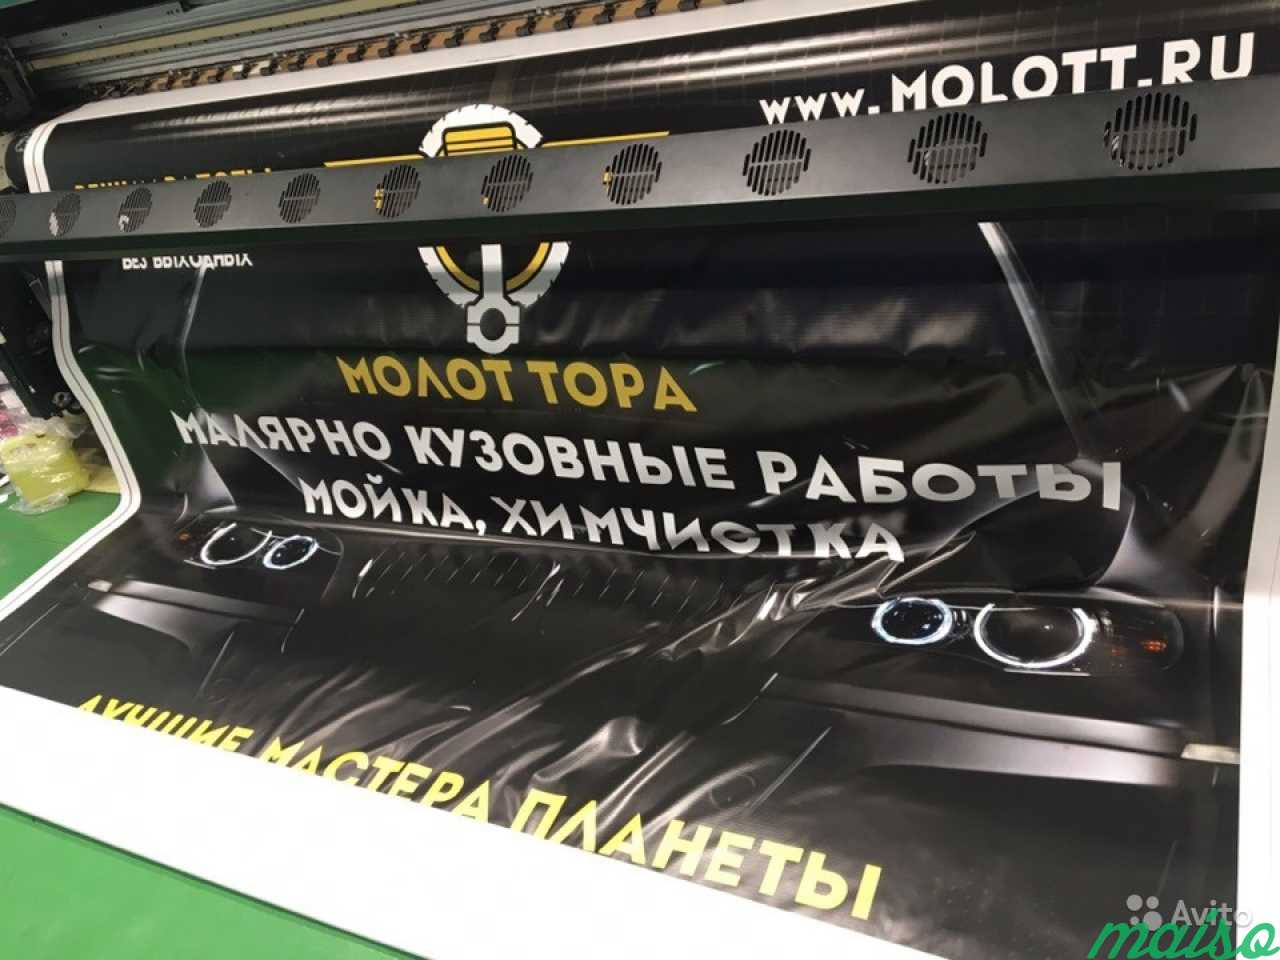 Печать на пленке, баннер, холст, наружная реклама в Санкт-Петербурге. Фото 2